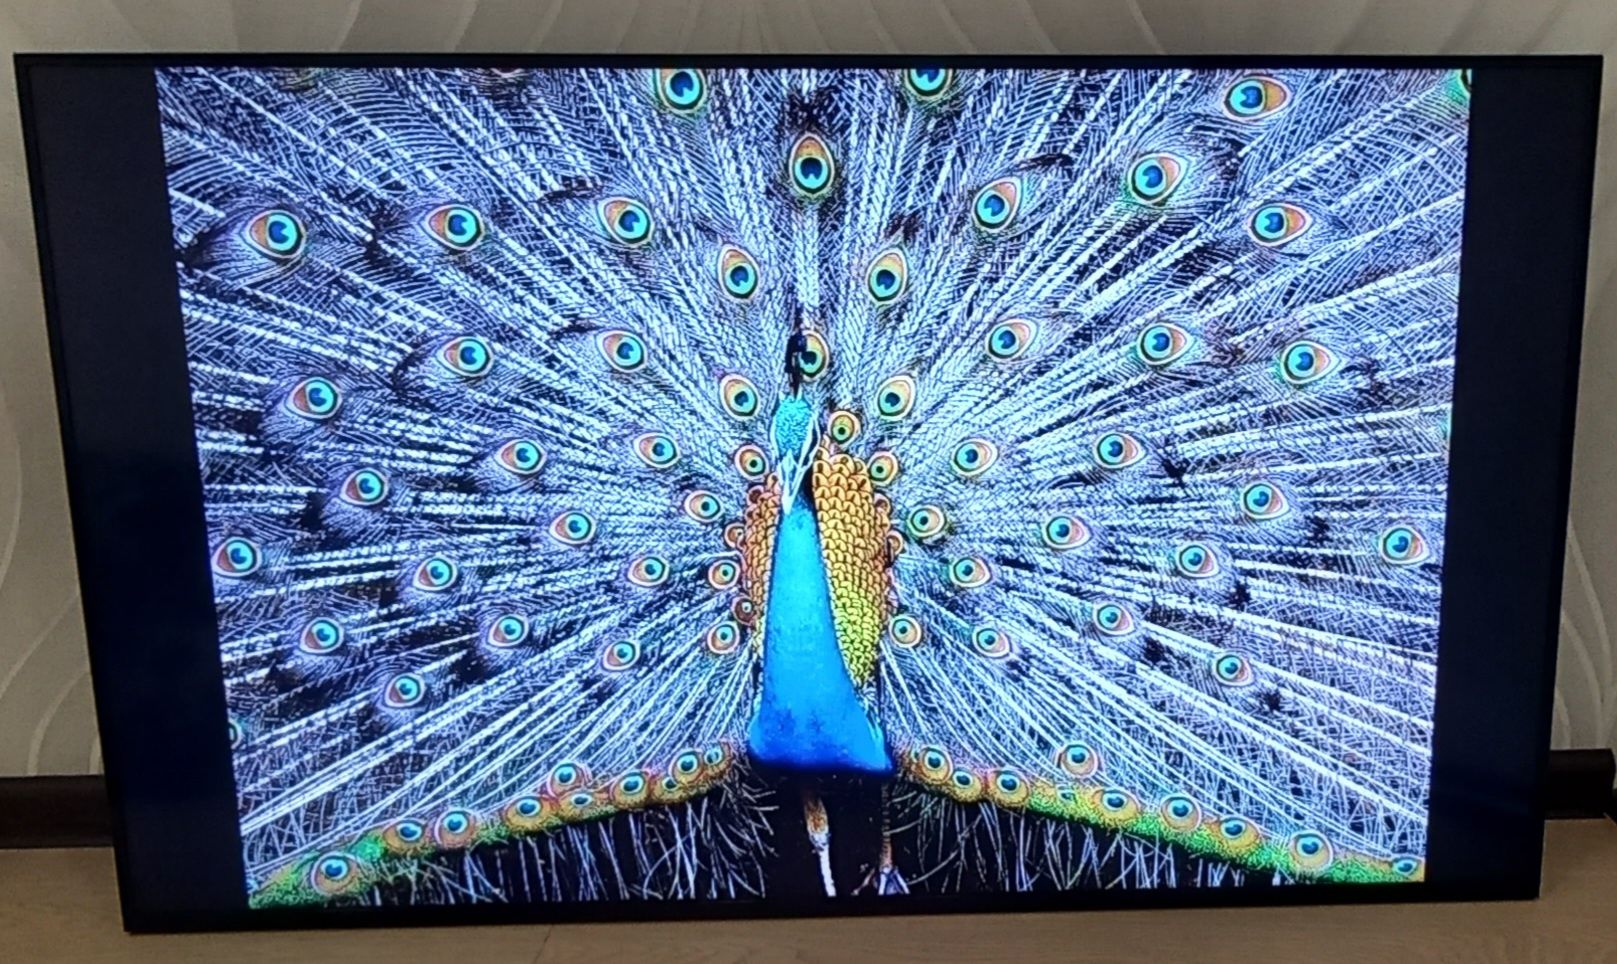 Телевизор Панель Дисплей Samsung 48 " с функцией видеостены